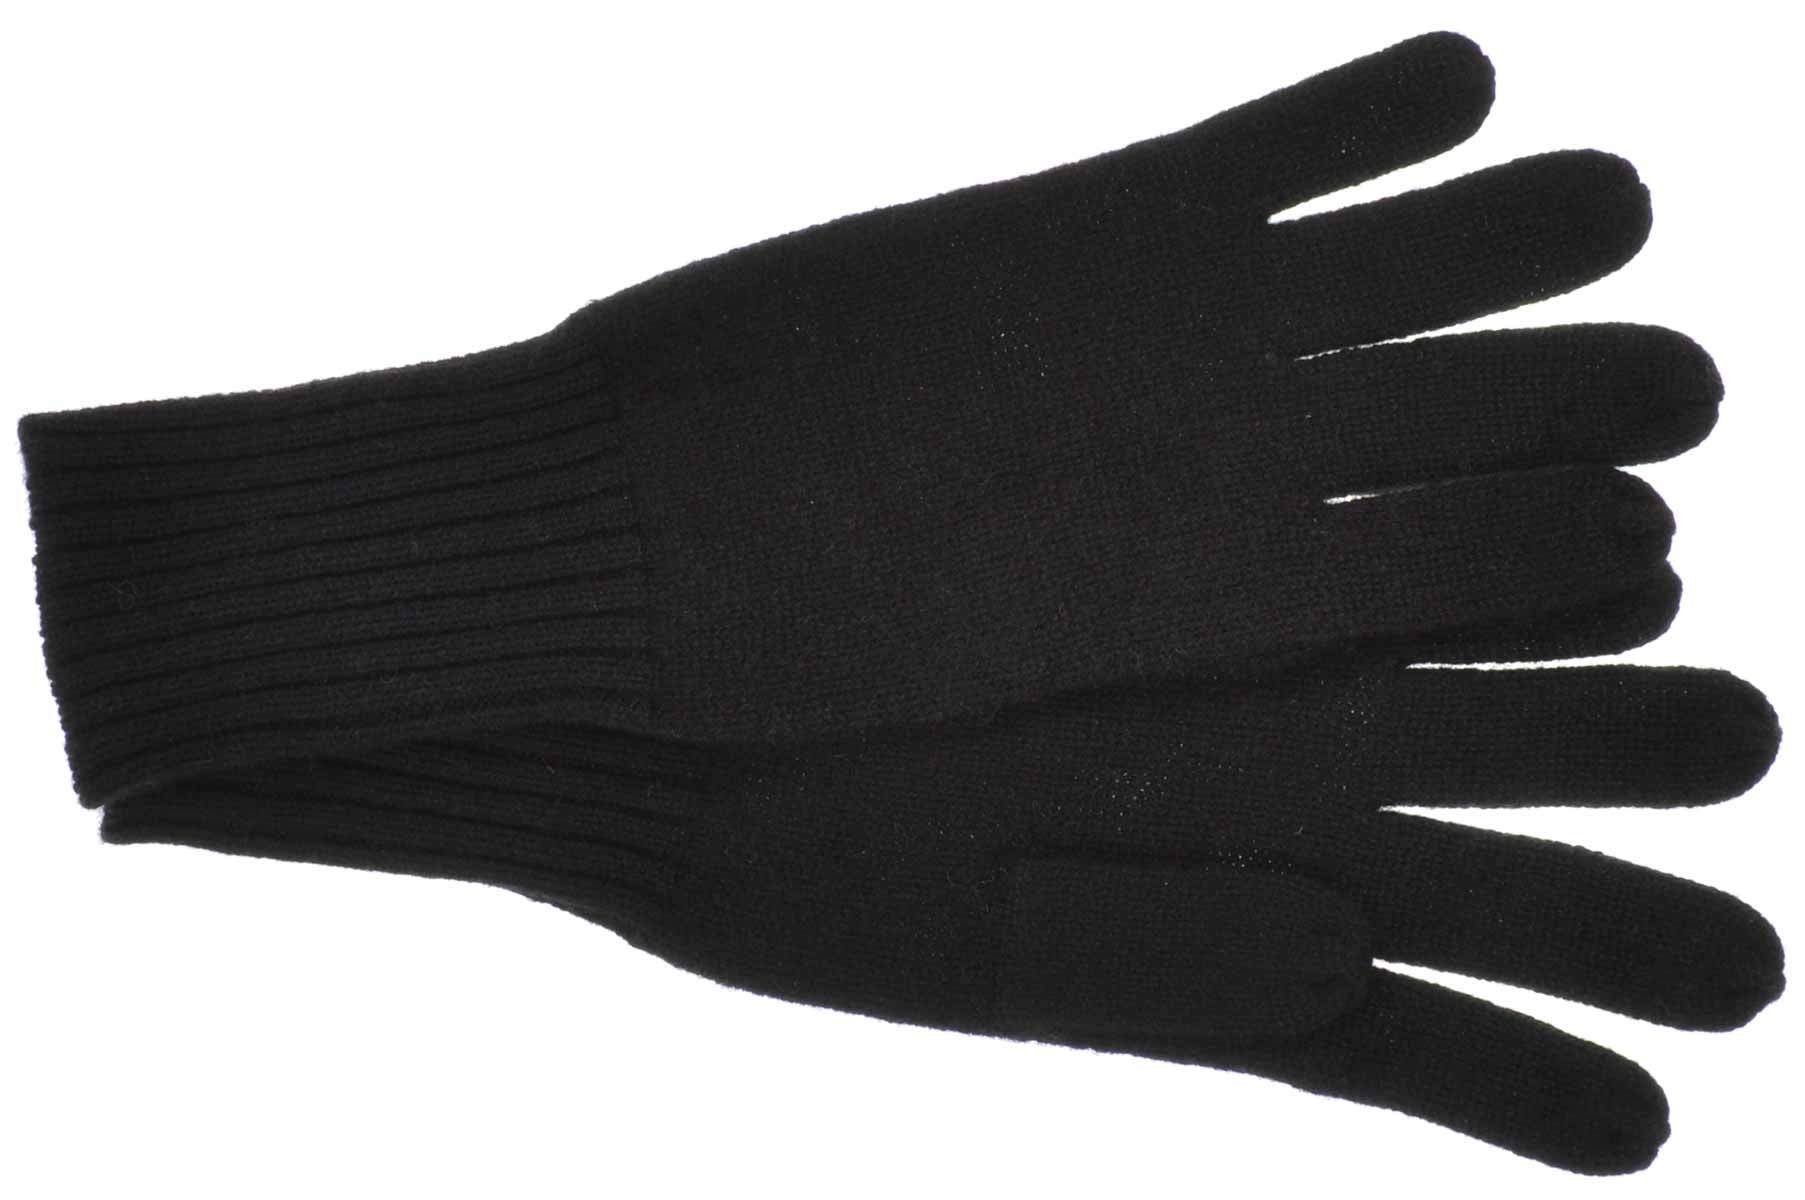 Seeberger Strickhandschuhe Handschuhe